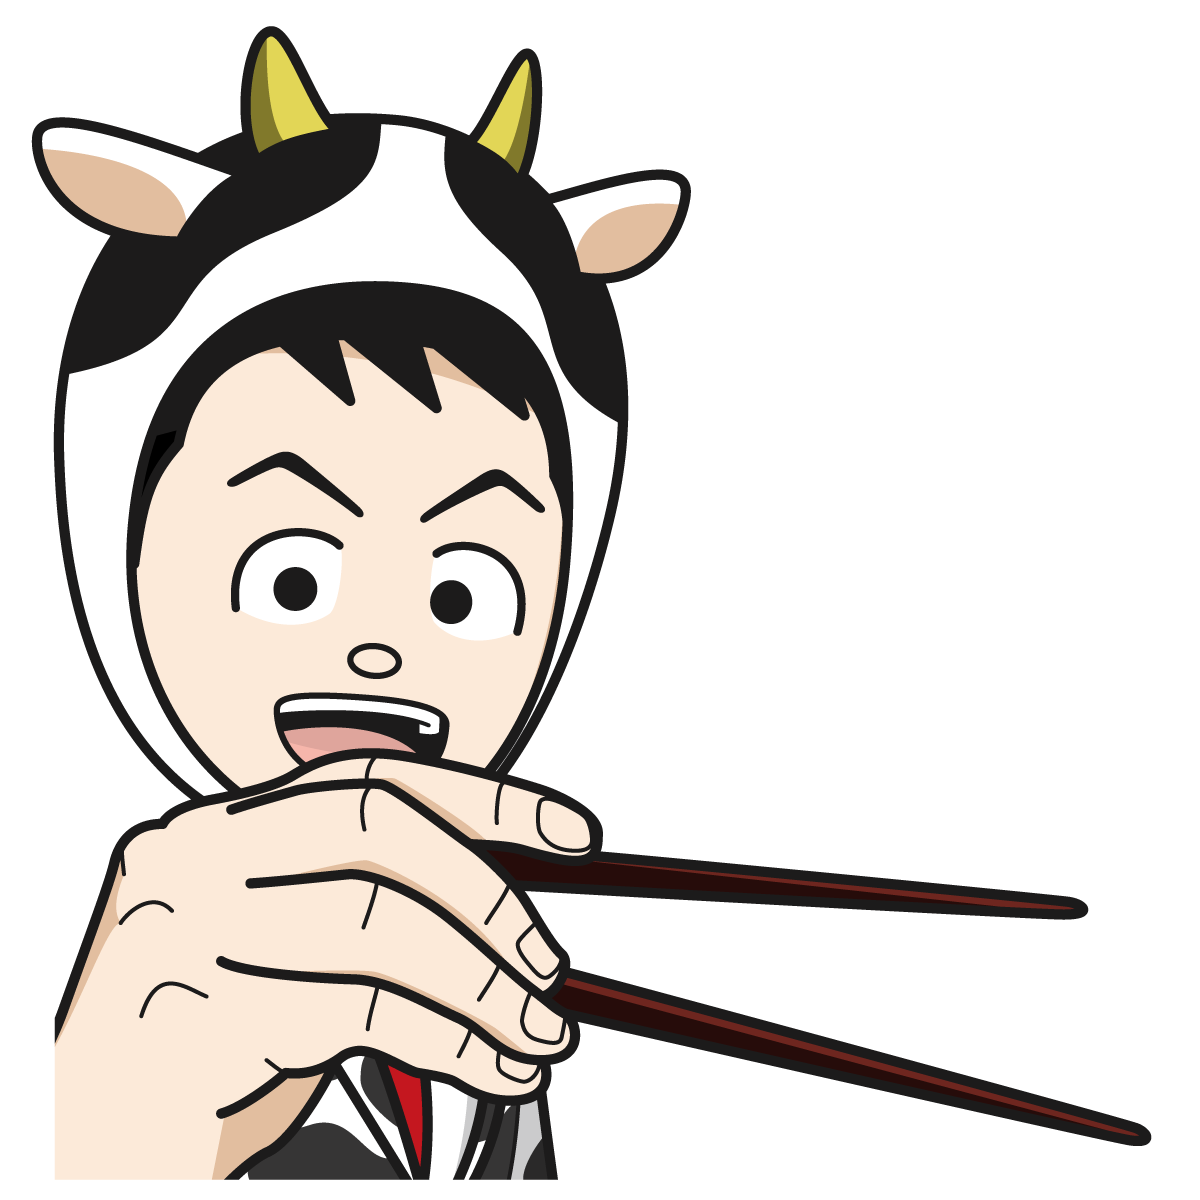 お箸を持つ牛のコスプレをした男性 52 Item イラスト Mido Kichi